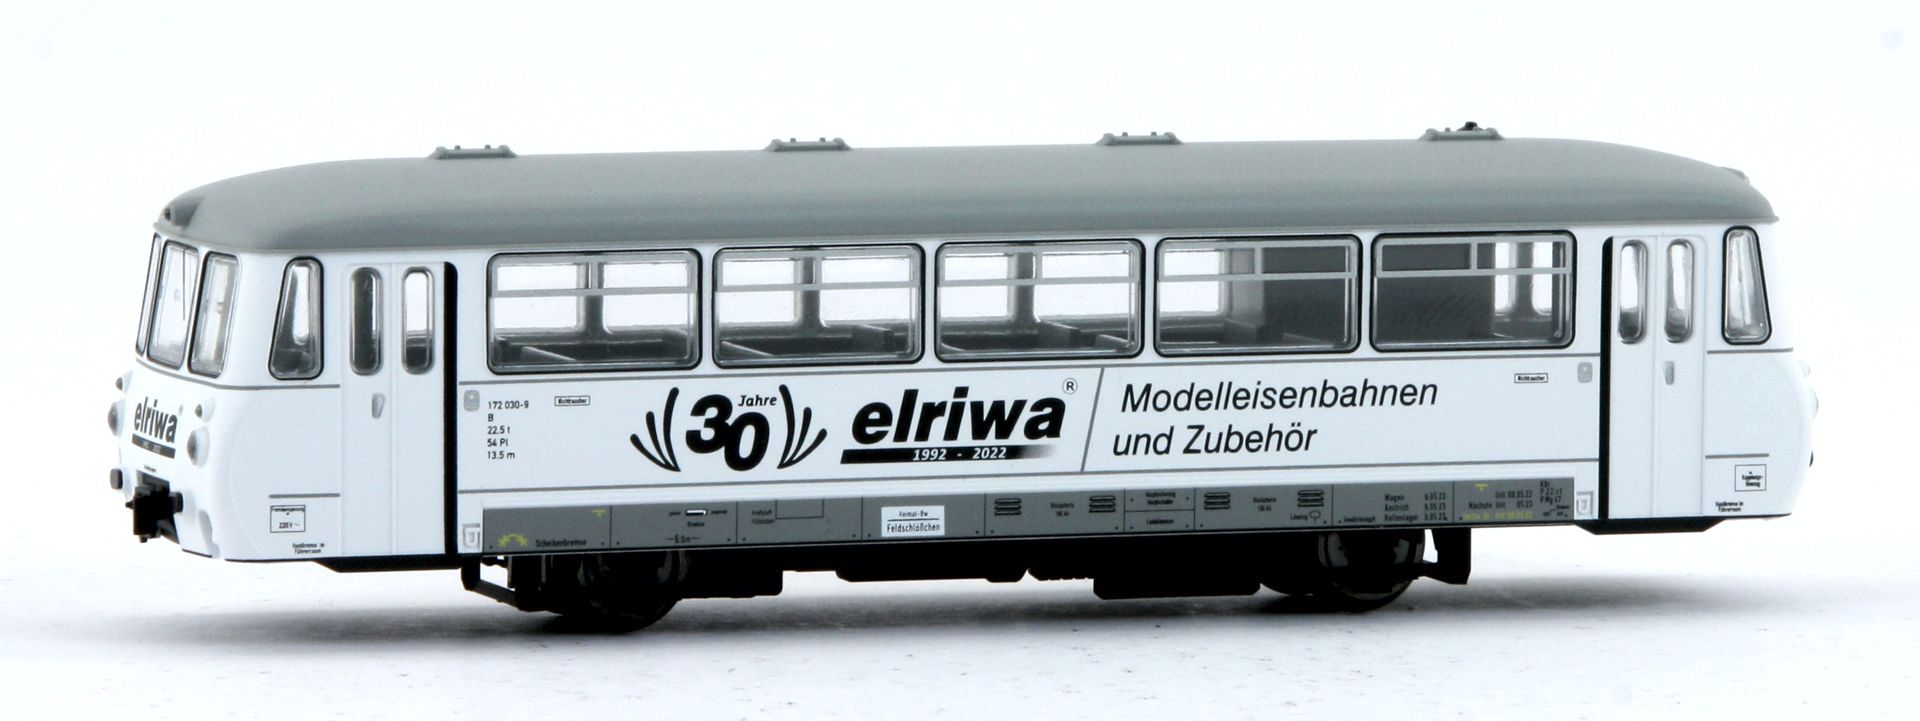 www.elriwa.de